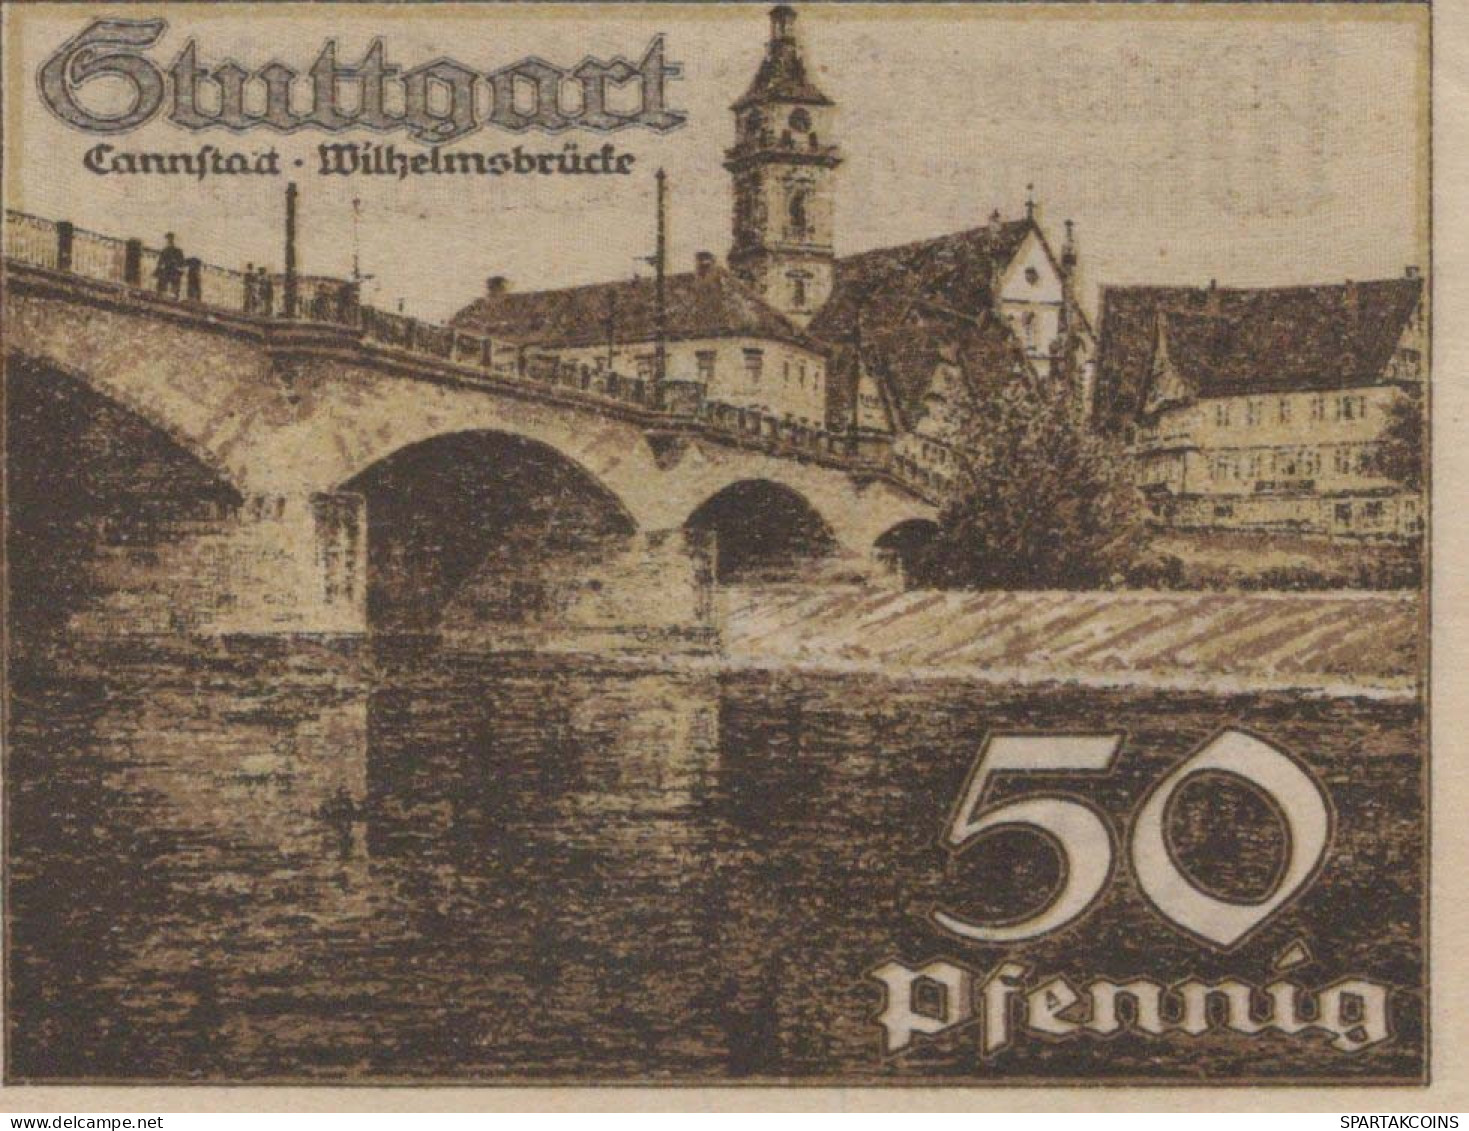 50 PFENNIG 1921 Stadt STUTTGART Württemberg UNC DEUTSCHLAND Notgeld #PC443 - [11] Emissions Locales